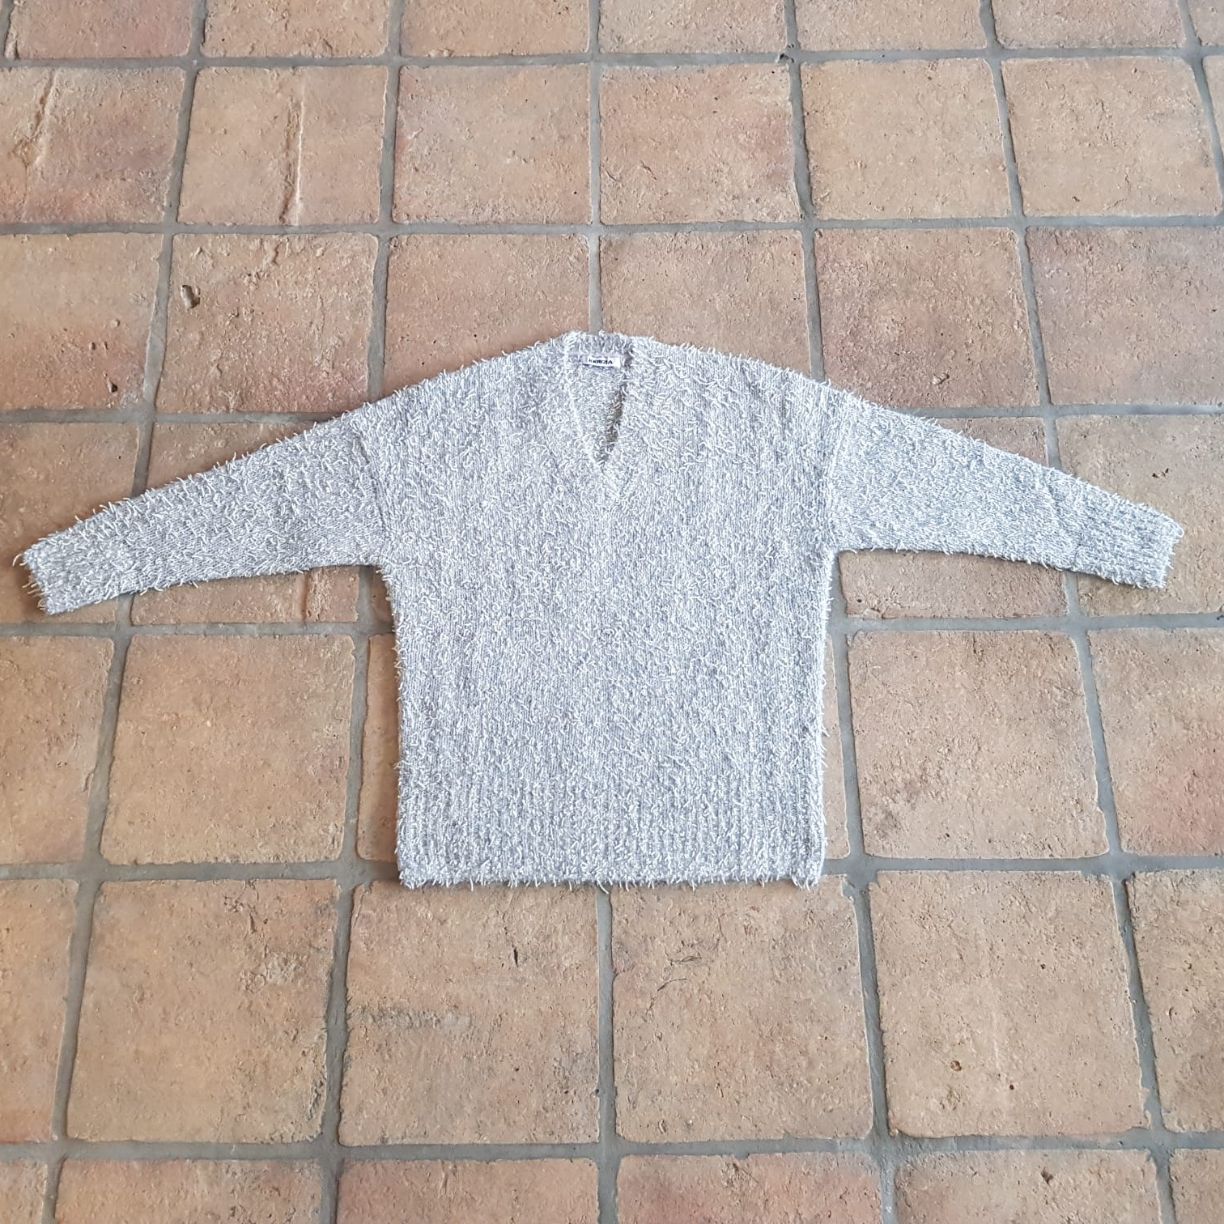 DONNA Les Boutiques - Sweater knit lose